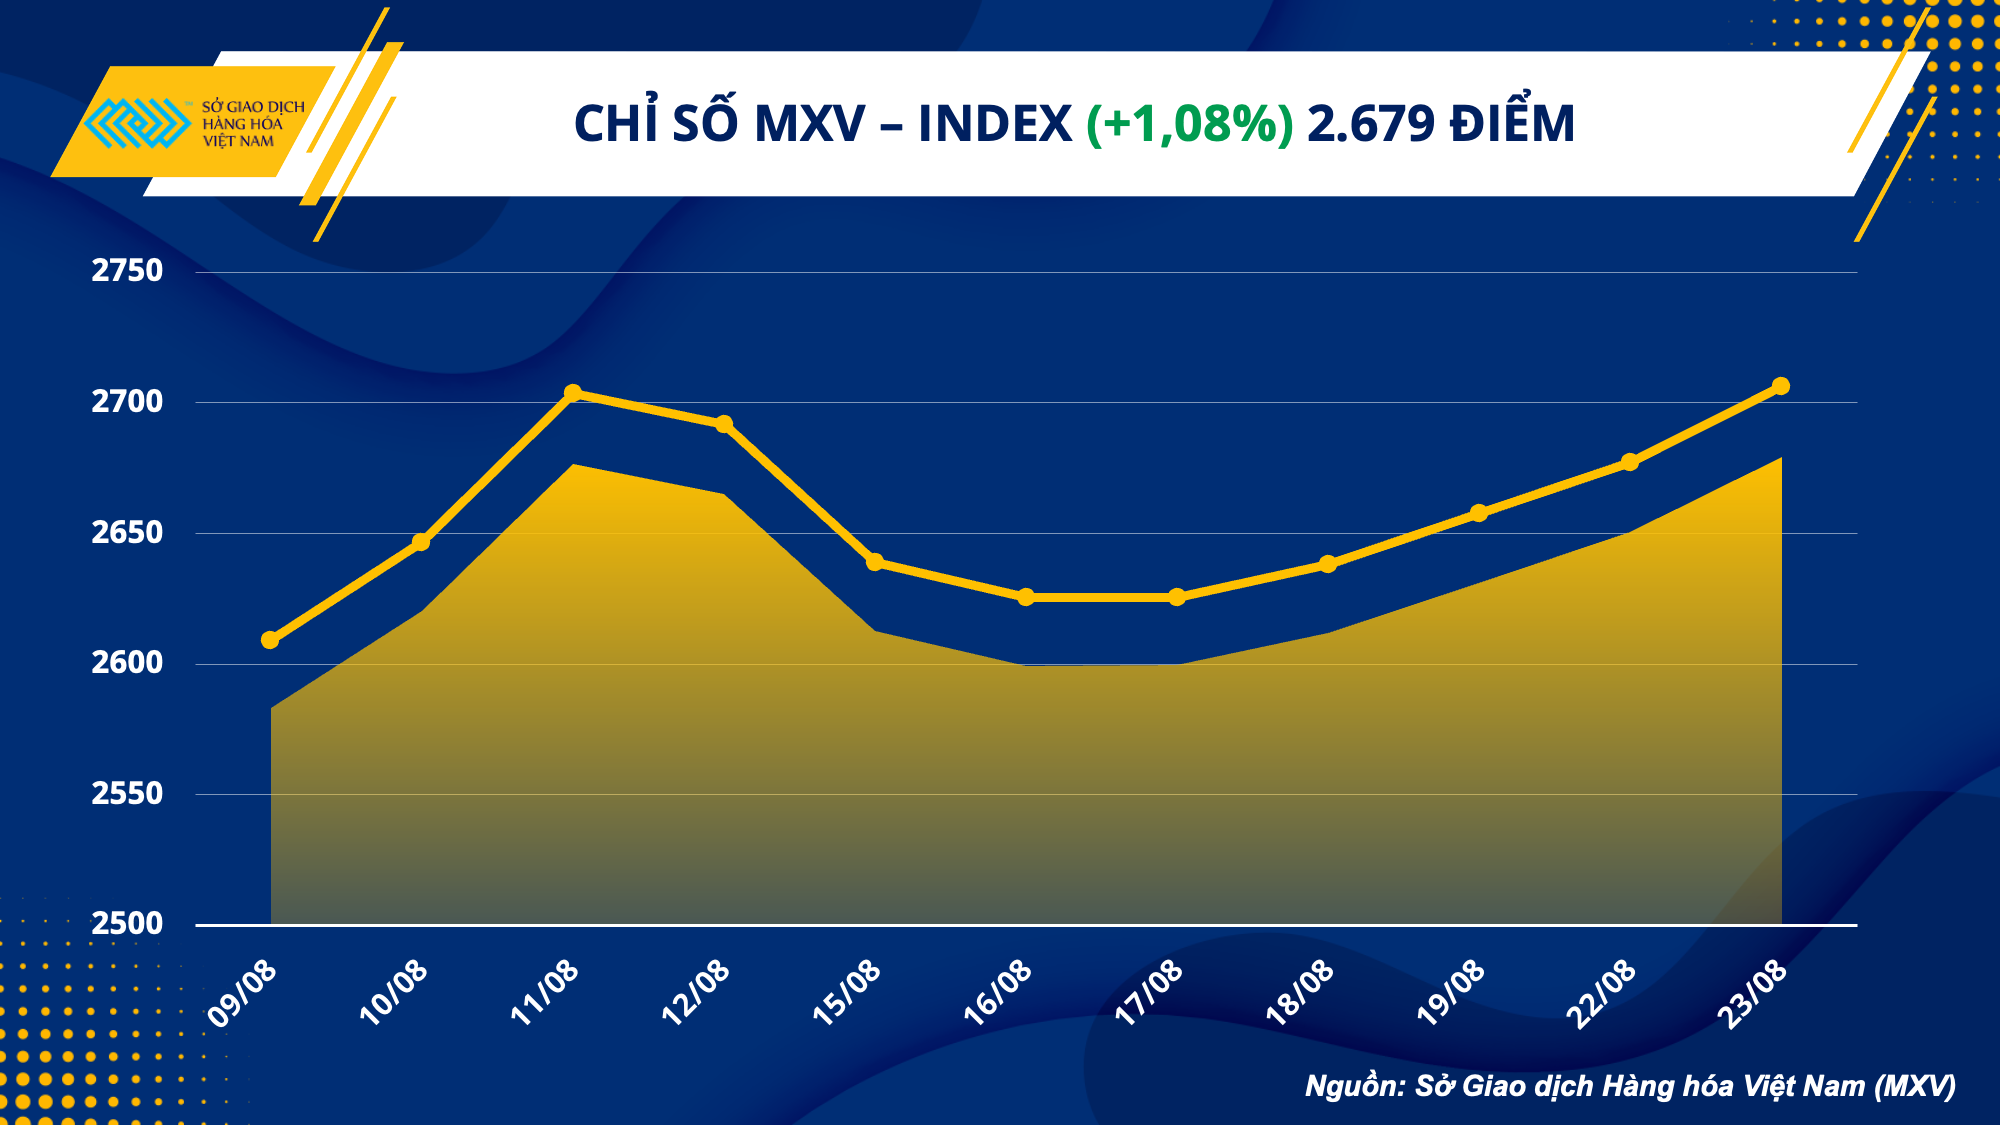 MXV-Index tăng 5 ngày liên tiếp, thị trường hàng hóa đã khởi sắc?